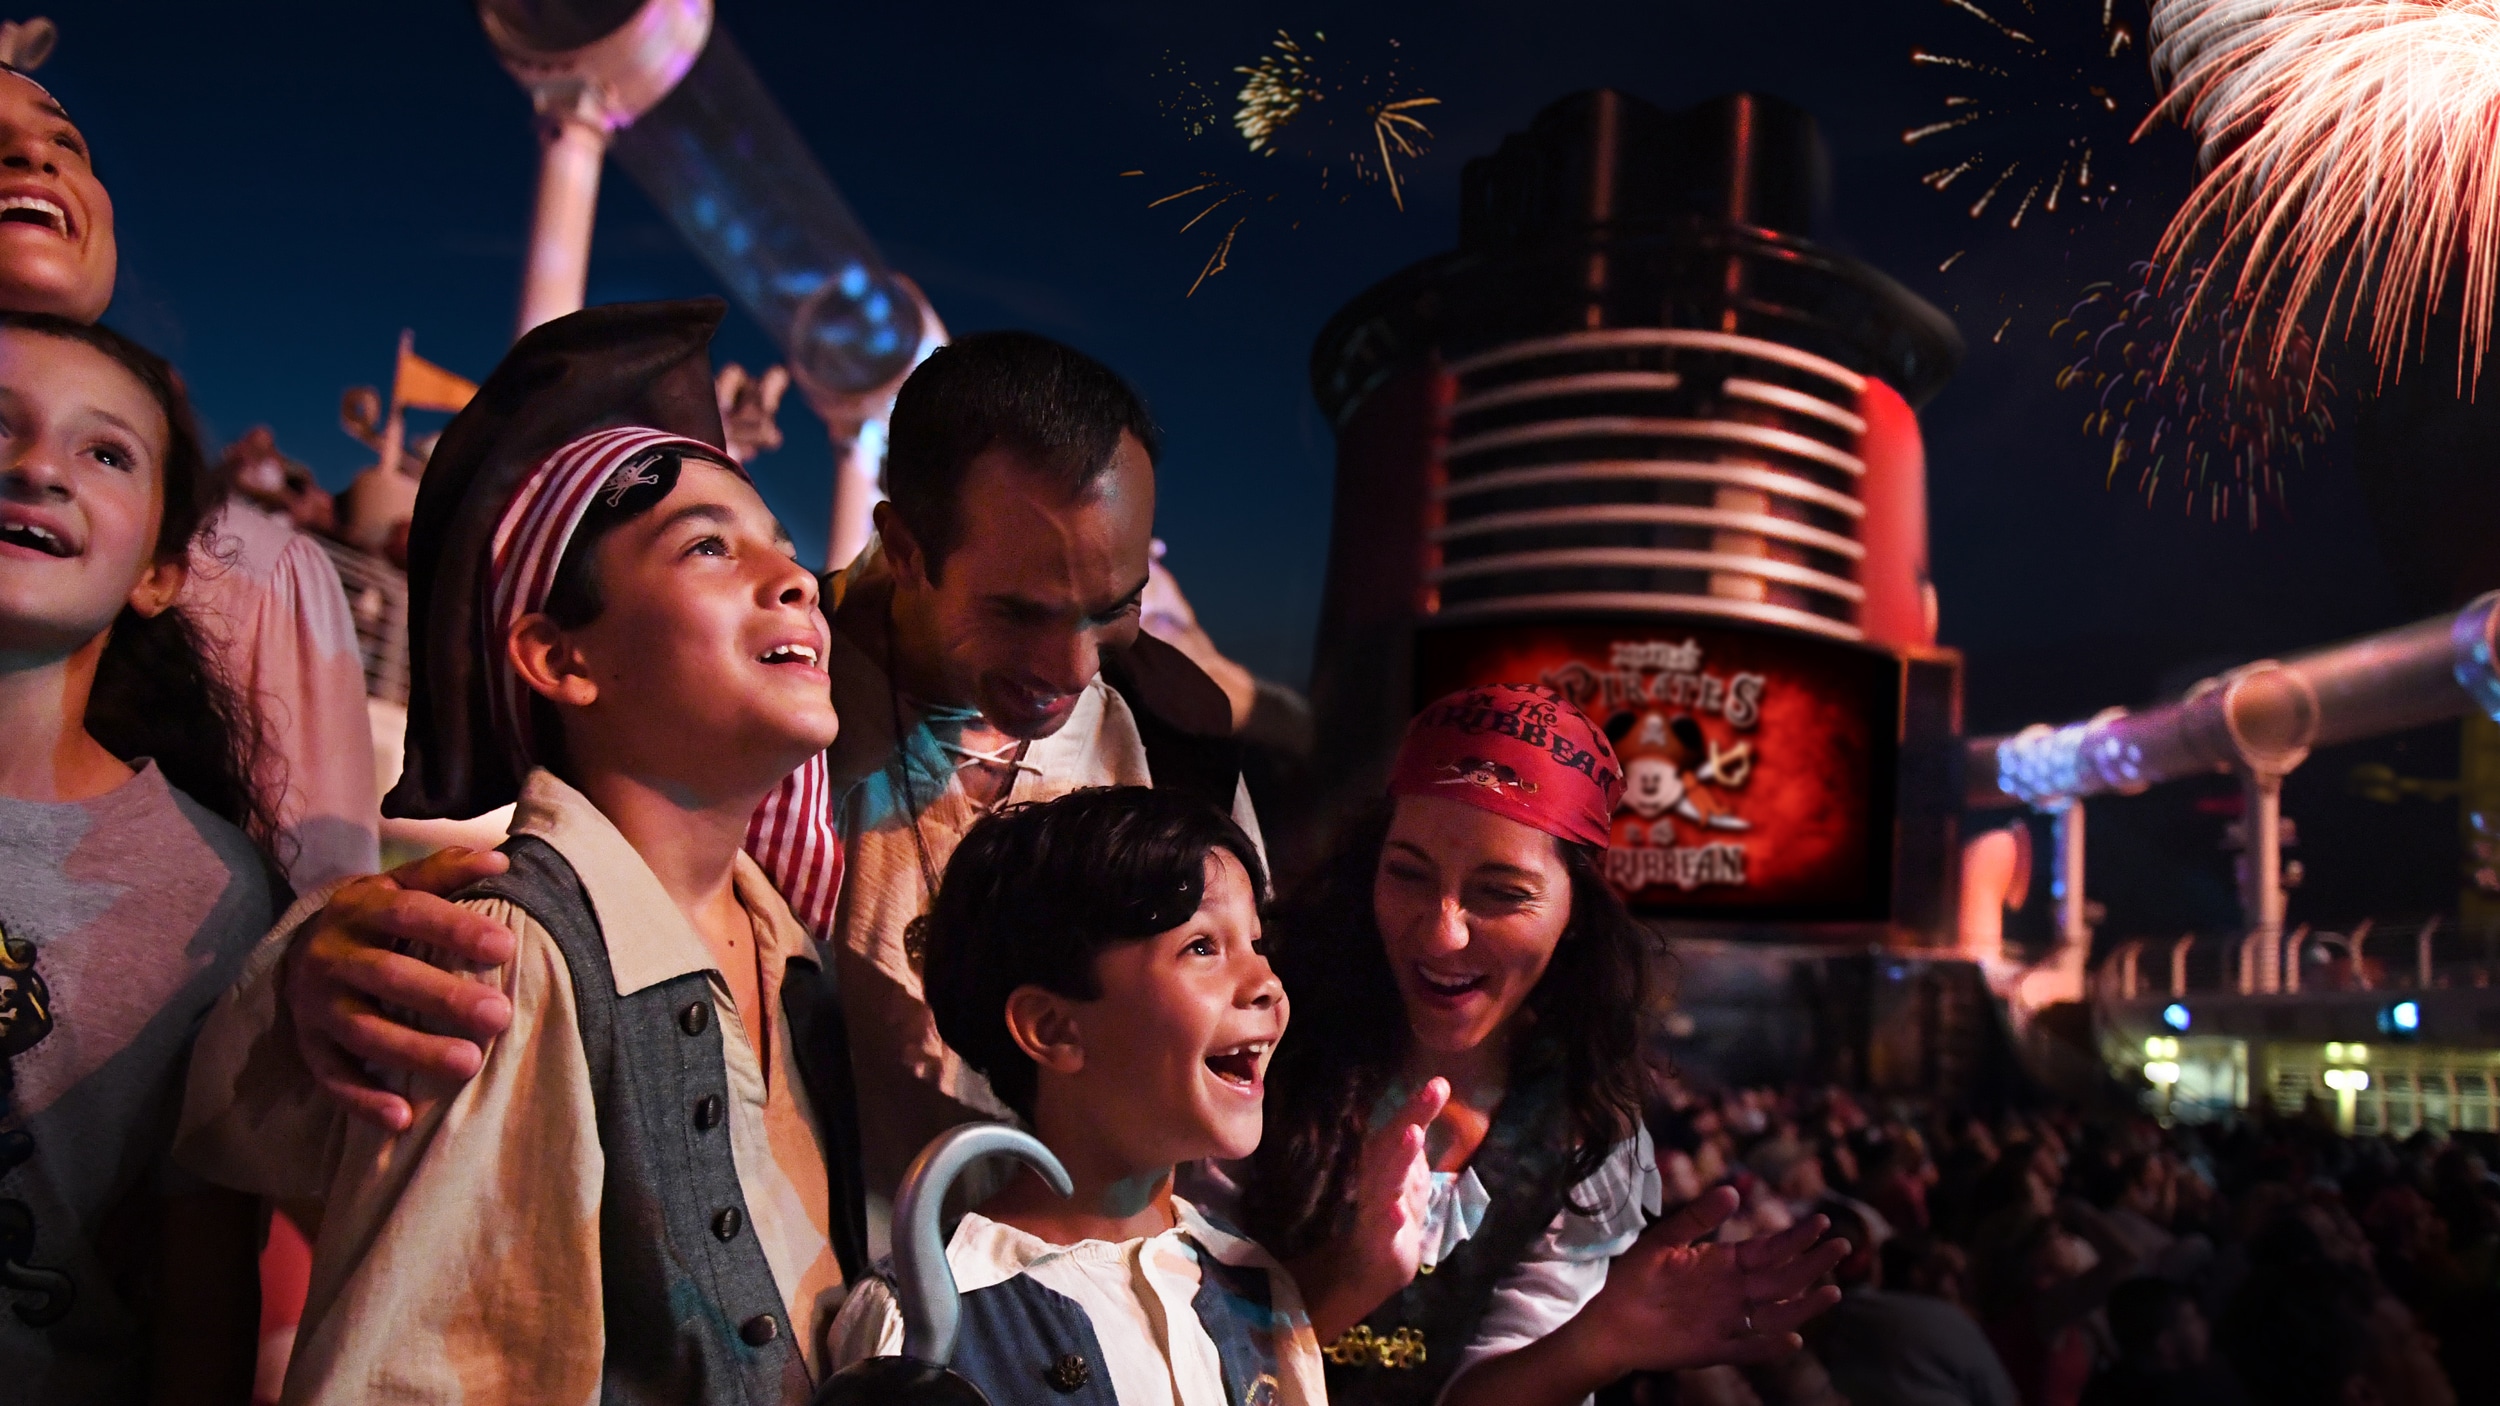 Fantasiados de pirata, os integrantes de uma família admiram os fogos de artifício em uma festa no deck da Disney Cruise Line.